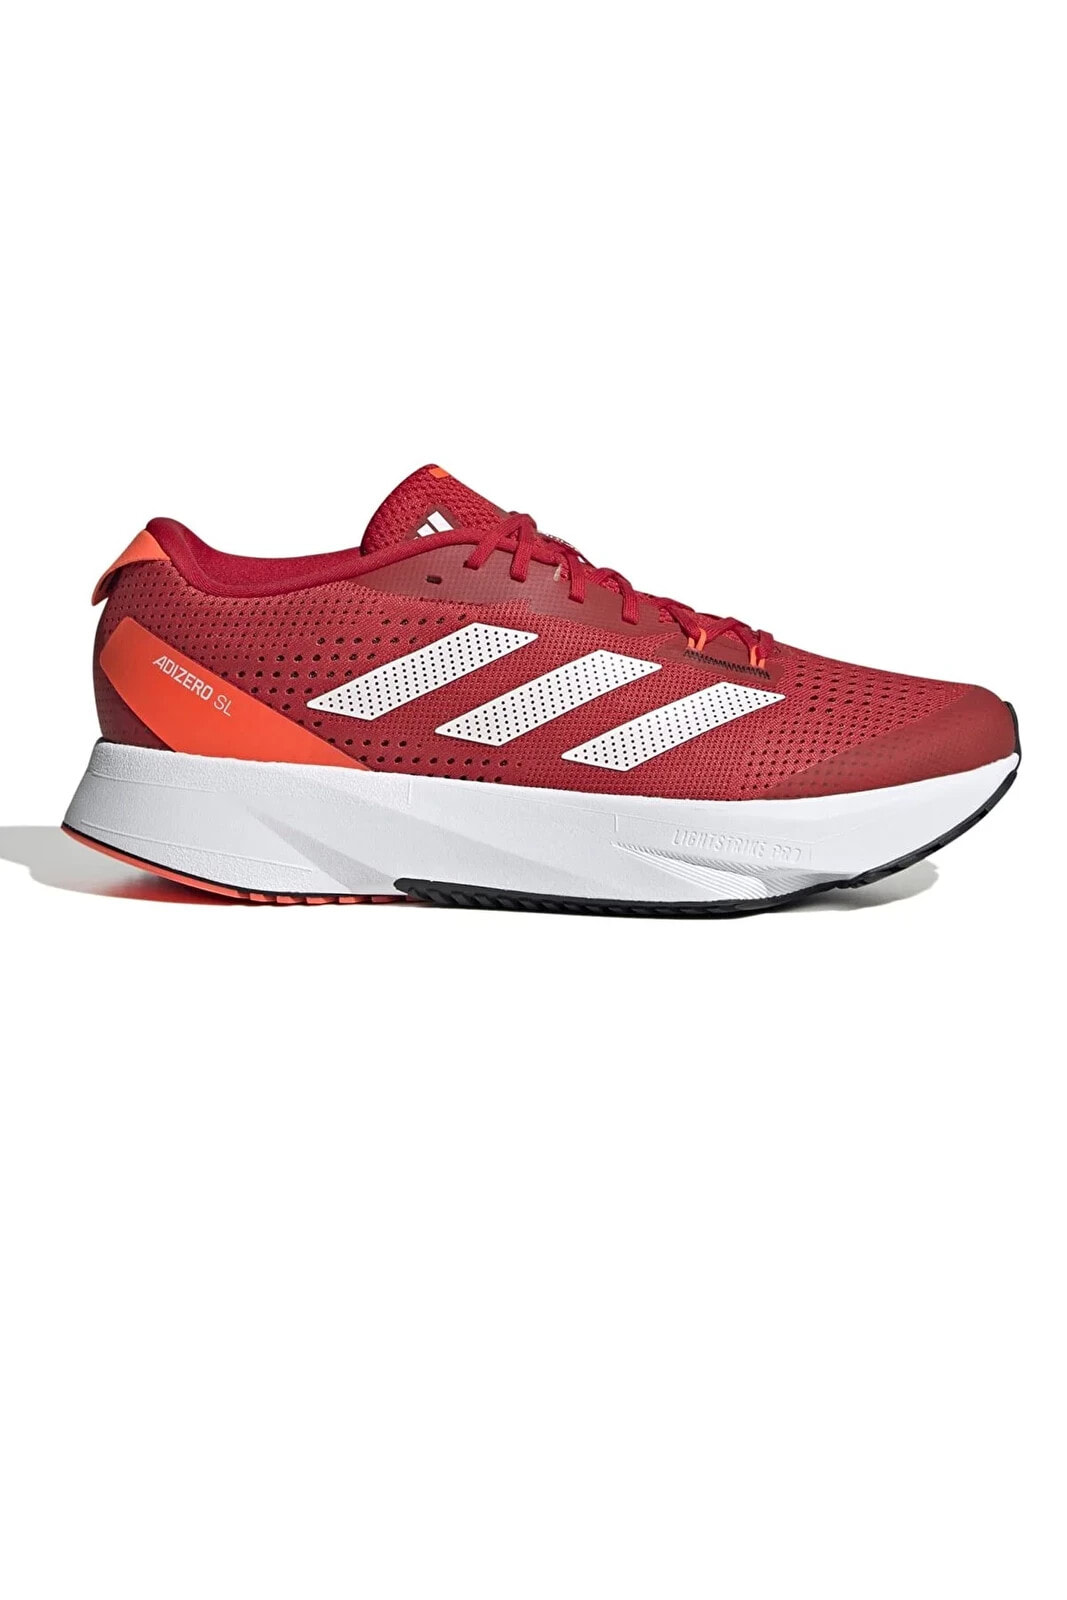 Hq1346-e Adızero Sl Erkek Spor Ayakkabı Kırmızı